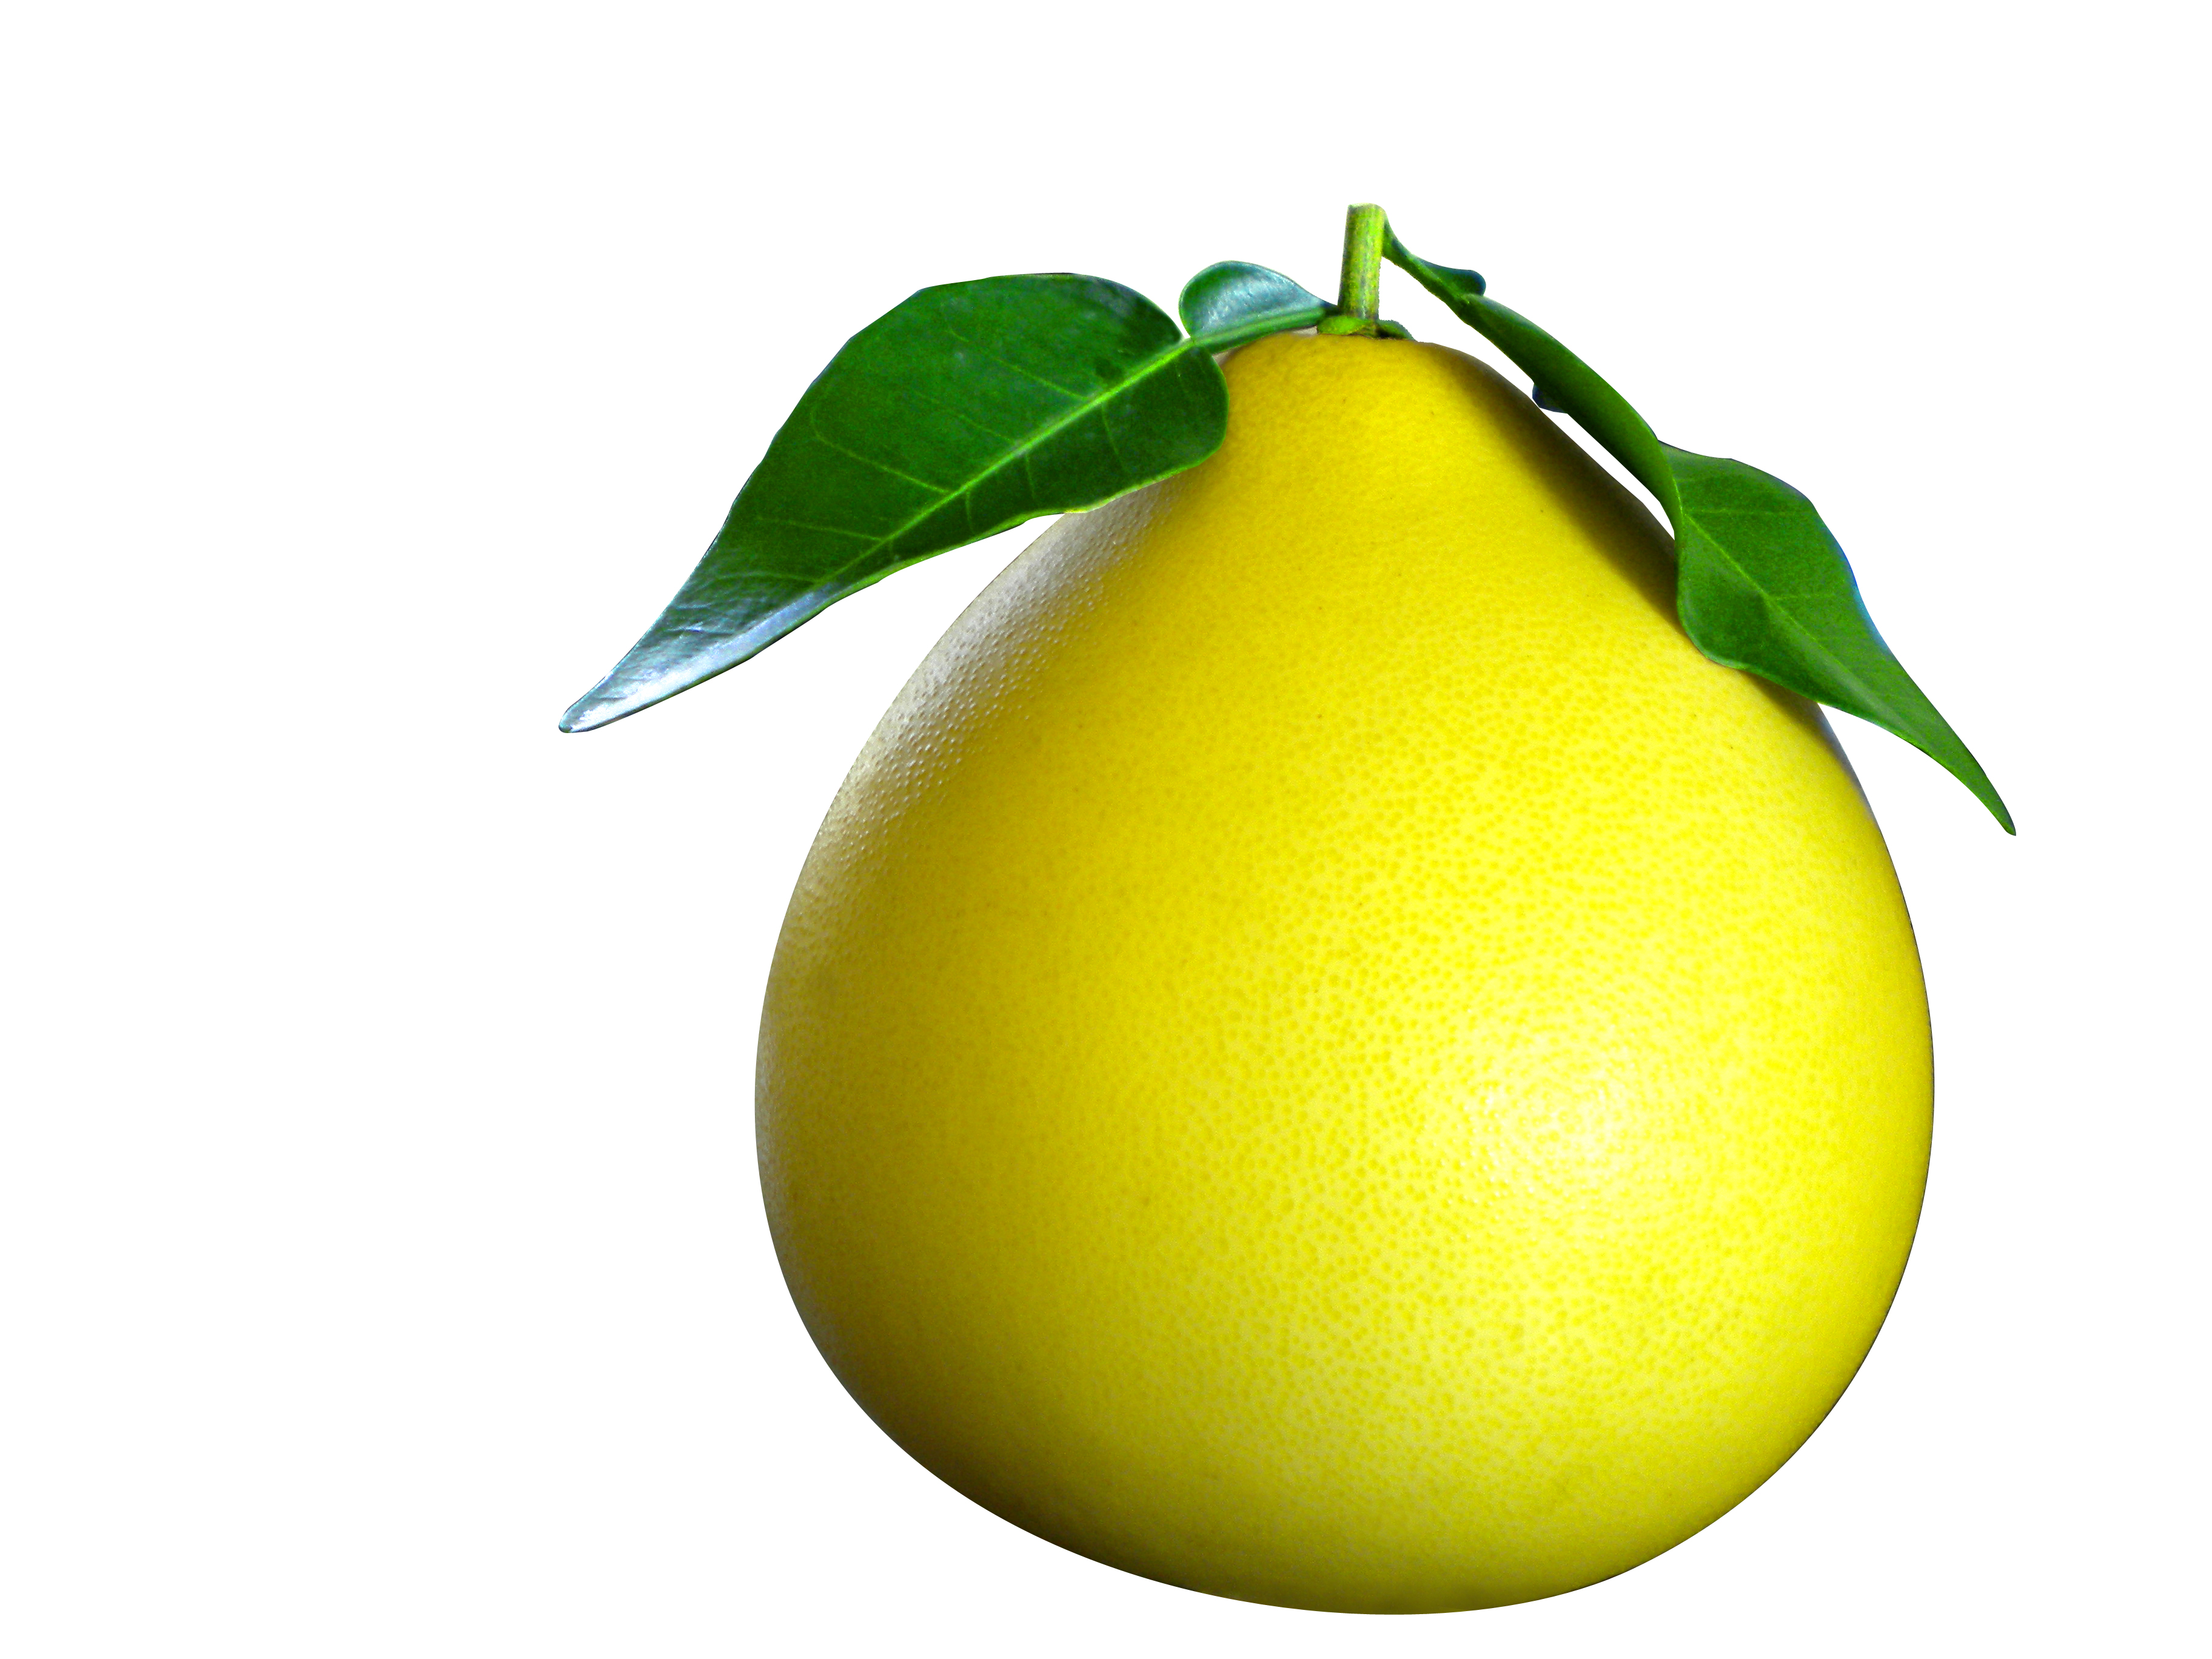 还有好柚来的标志 附件: 好柚来原来设计.jpg 柚子图片2.